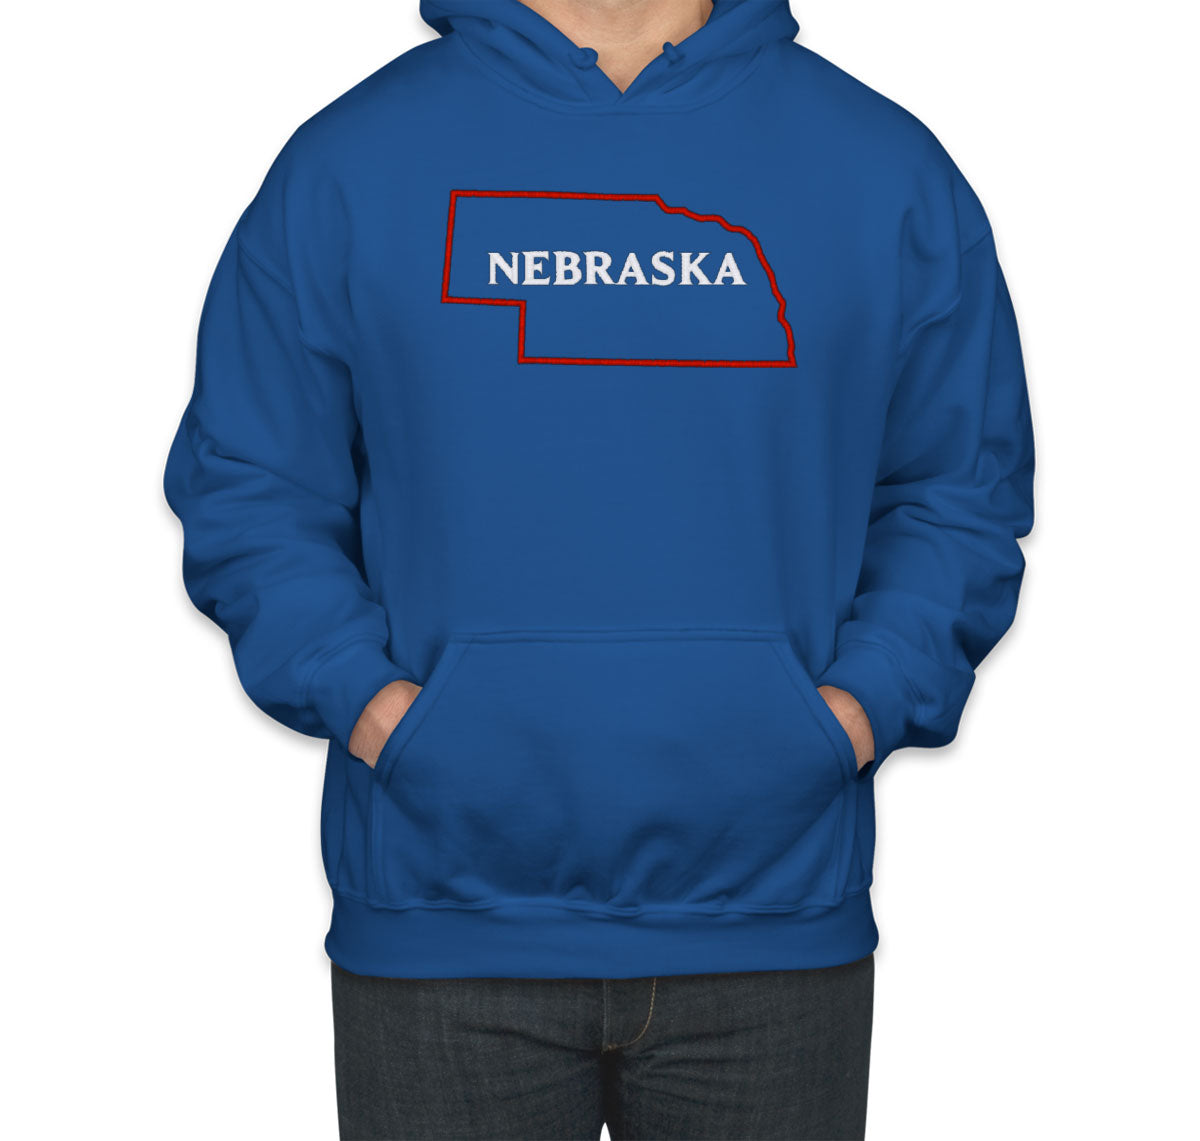 Nebraska Embroidered Unisex Hoodie